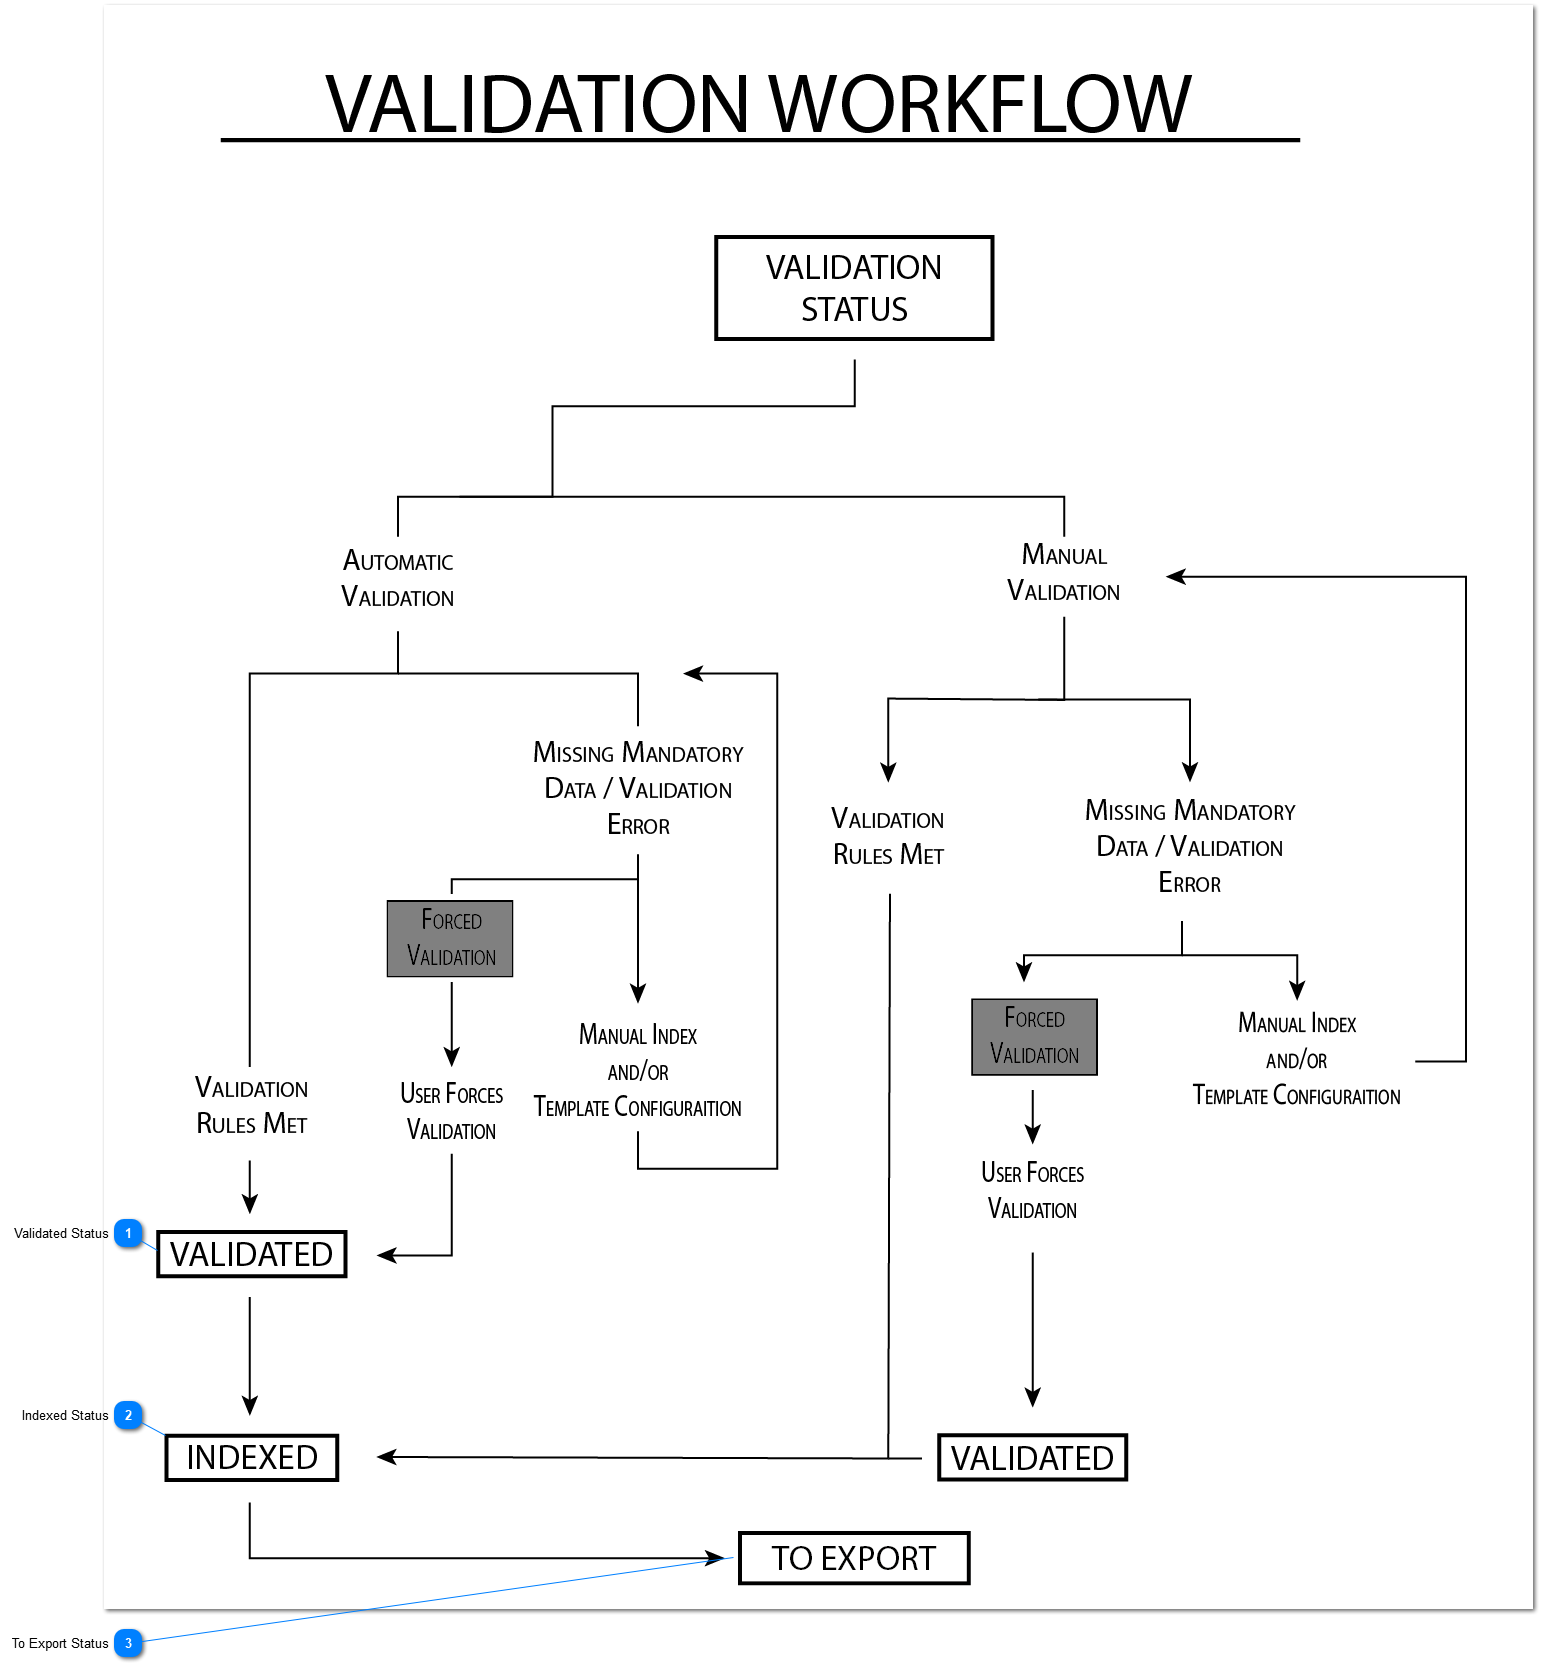 3.2.1. Document Validation Workflow